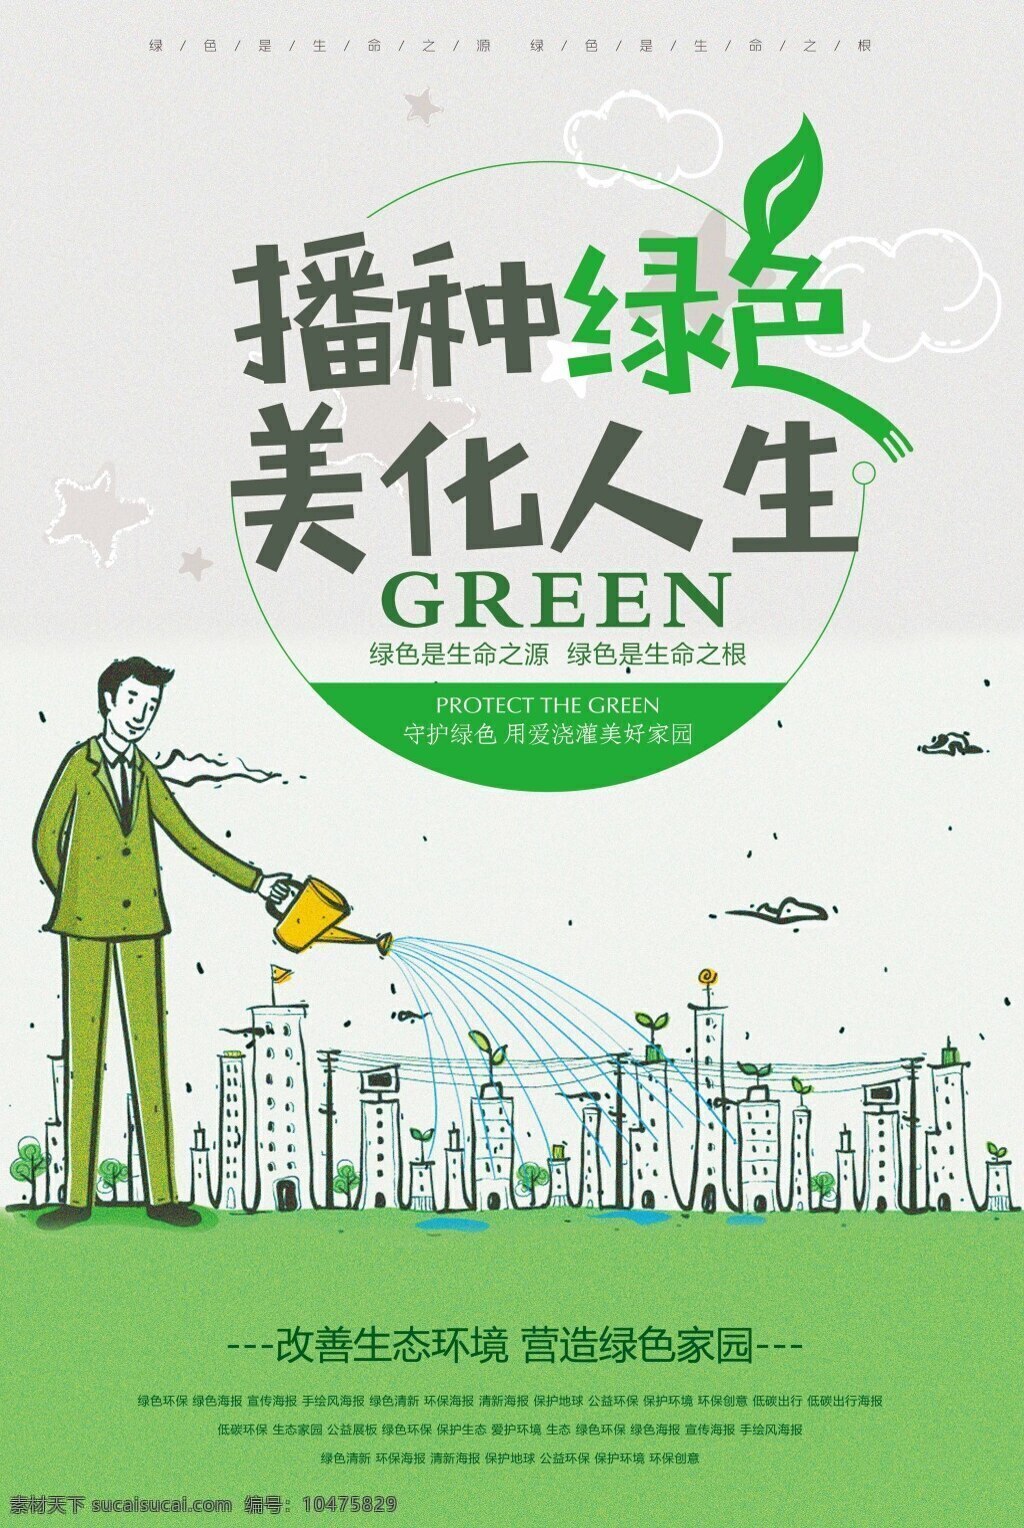 绿色环保 播种 绿色 美化 人生 公益 海报 绿色海报 宣传海报 手绘风海报 绿色清新 环保海报 清新海报 保护地球 公益环保 保护环境 环保创意 低碳出行 低碳出行海报